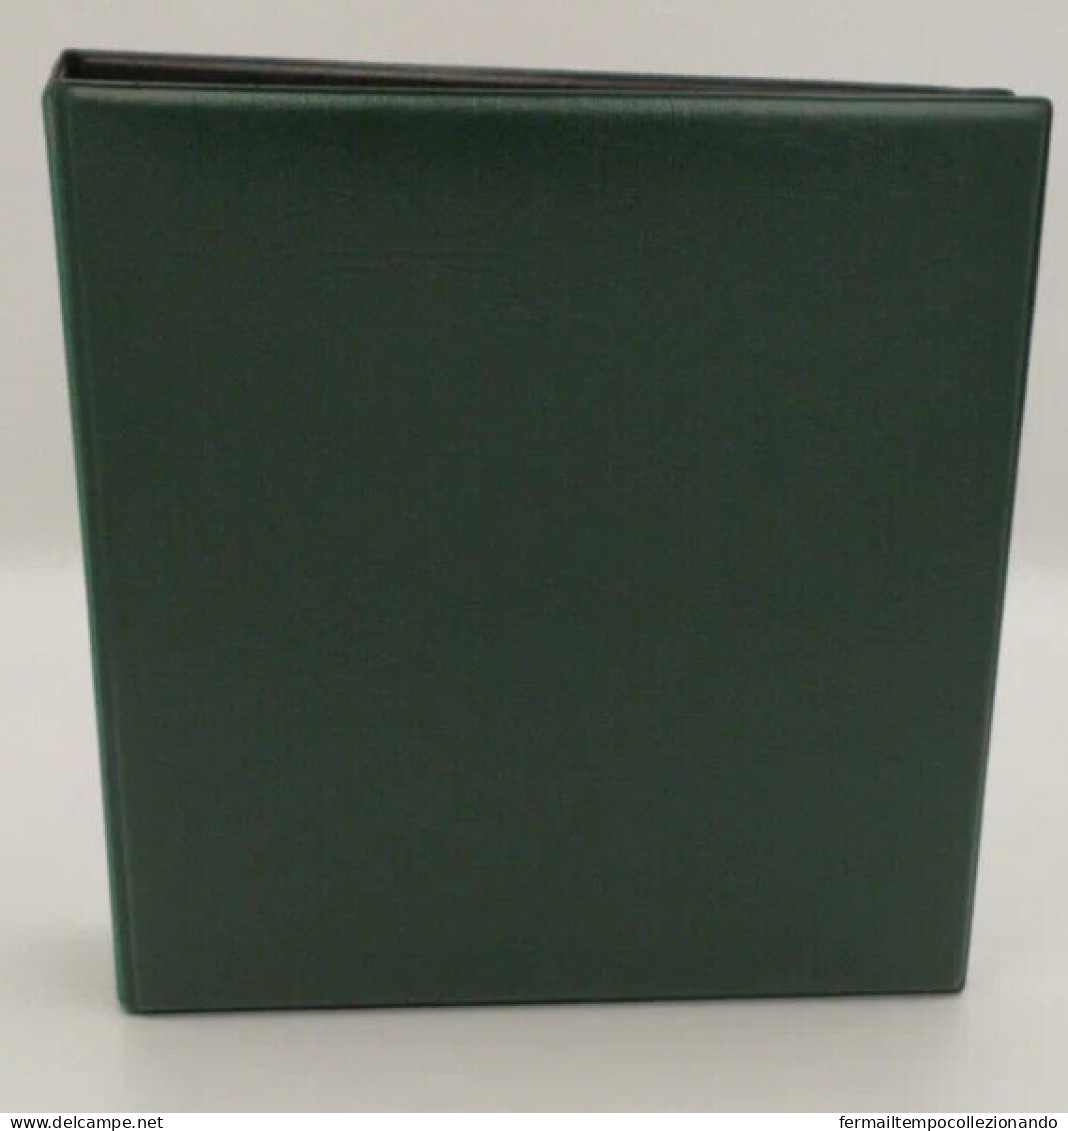 album raccoglitore verde con 50 fogli trasparenti 4 tasche per figurine santini